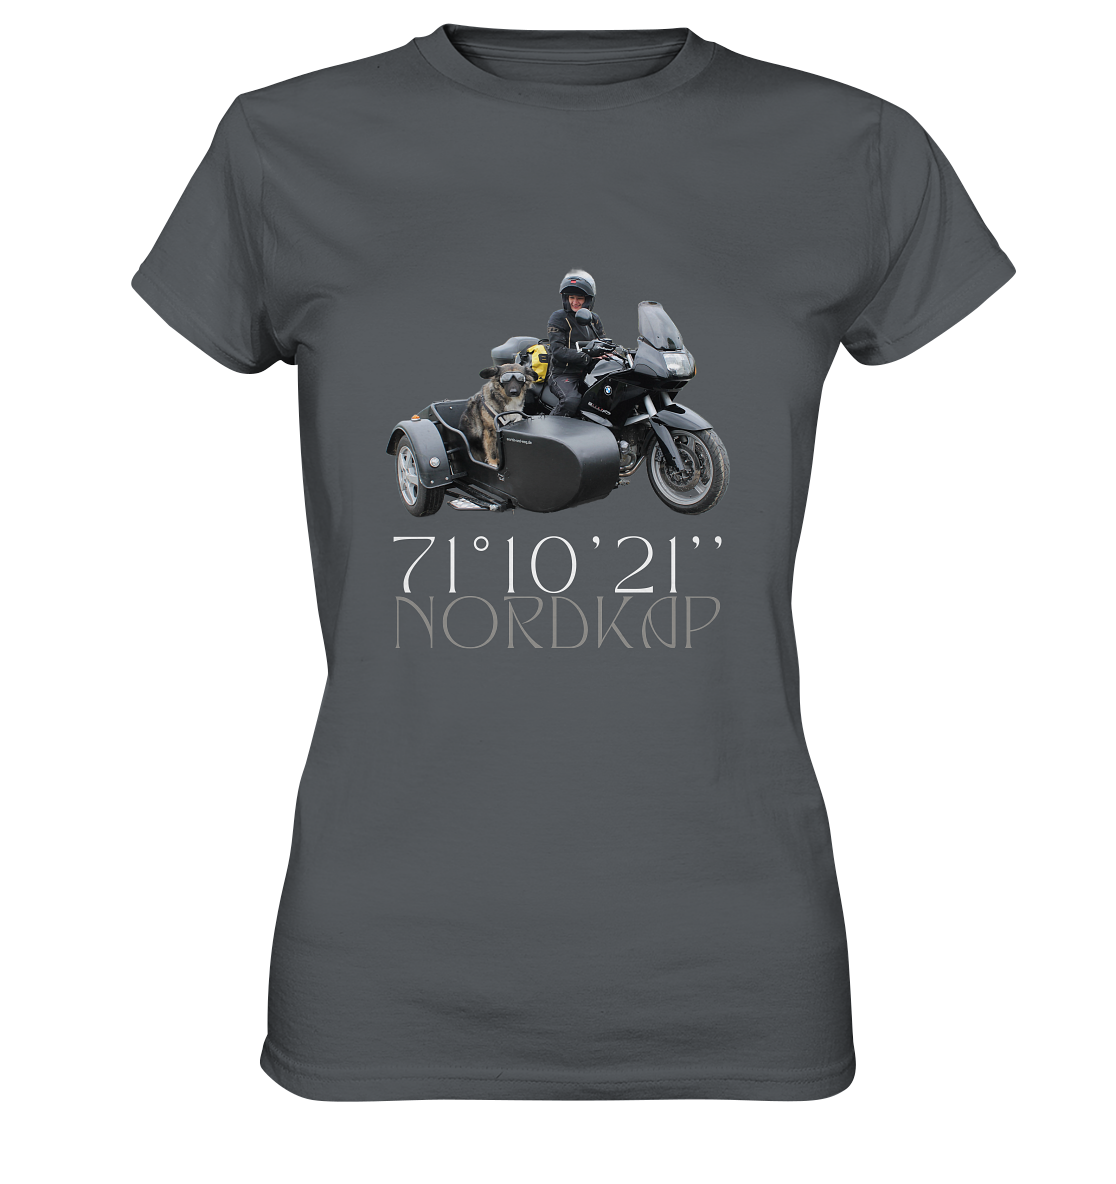 "Nordkap _ Breitengrad 71°10'21''" _ für mich | Damen-Shirt mit individuellem Motorrad-Foto-Druck in Top-Qualität und Nordkap-Spruch in hellem Design